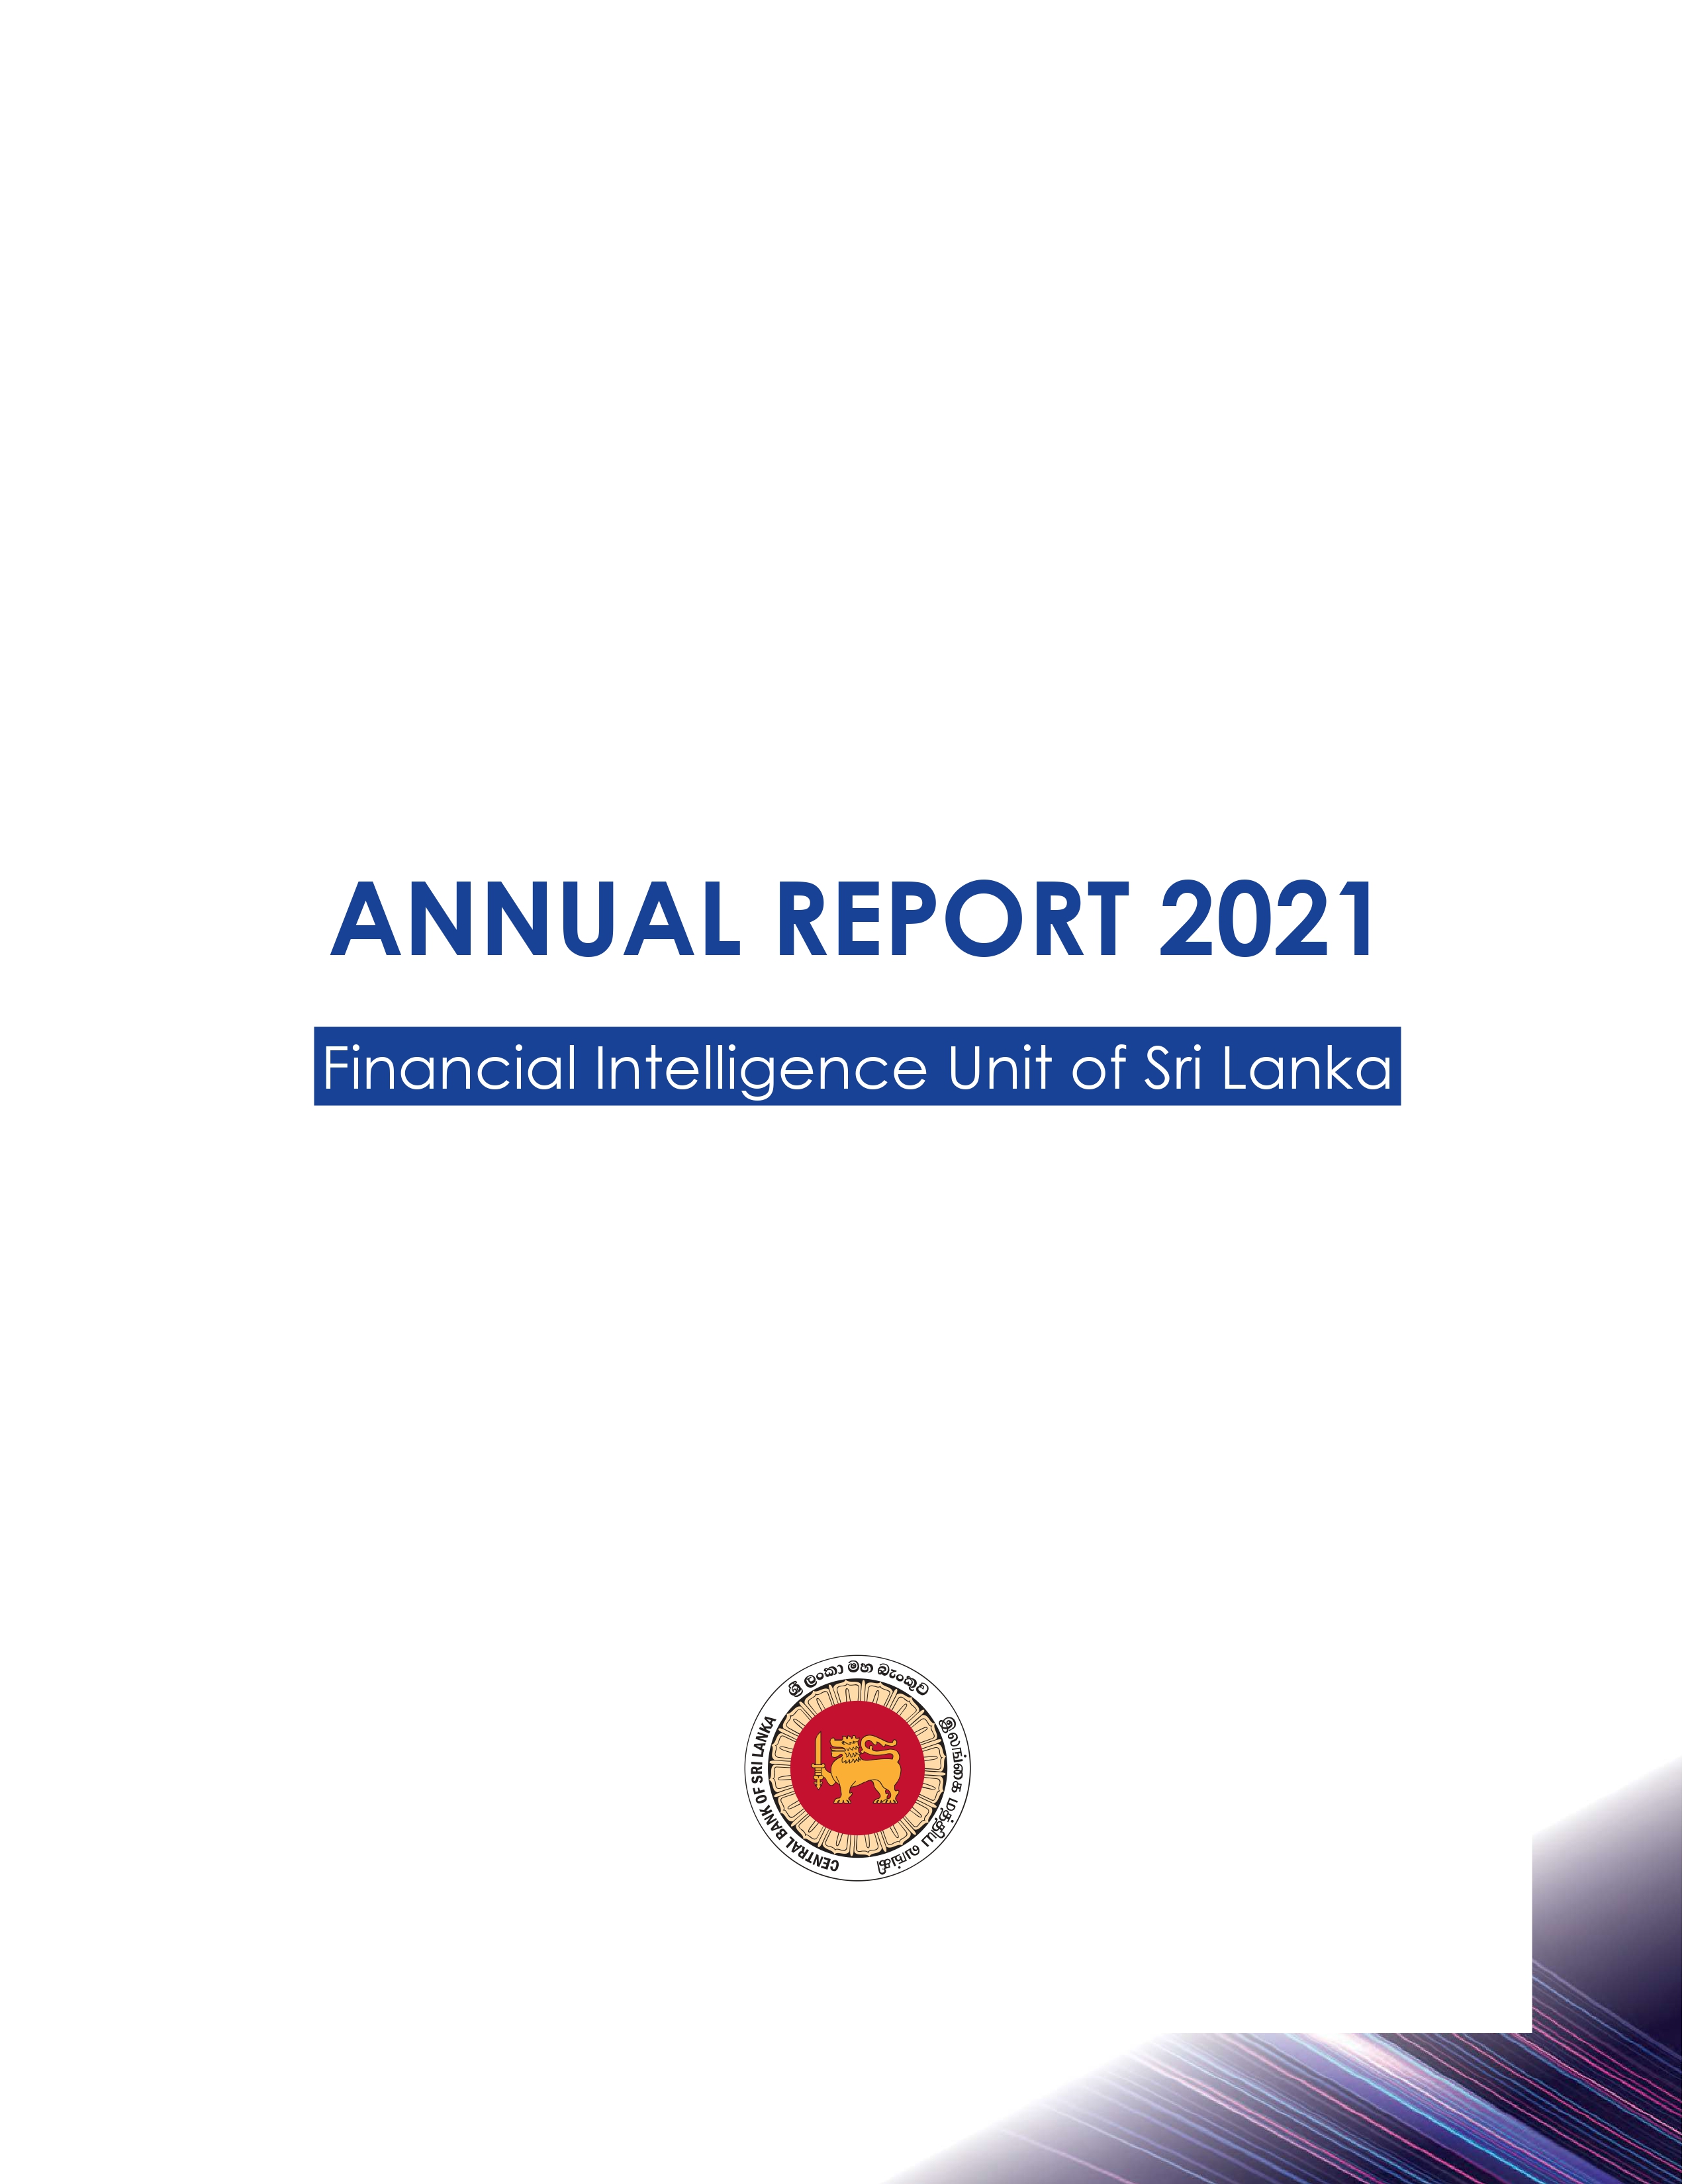 FIU Annual Report 2020